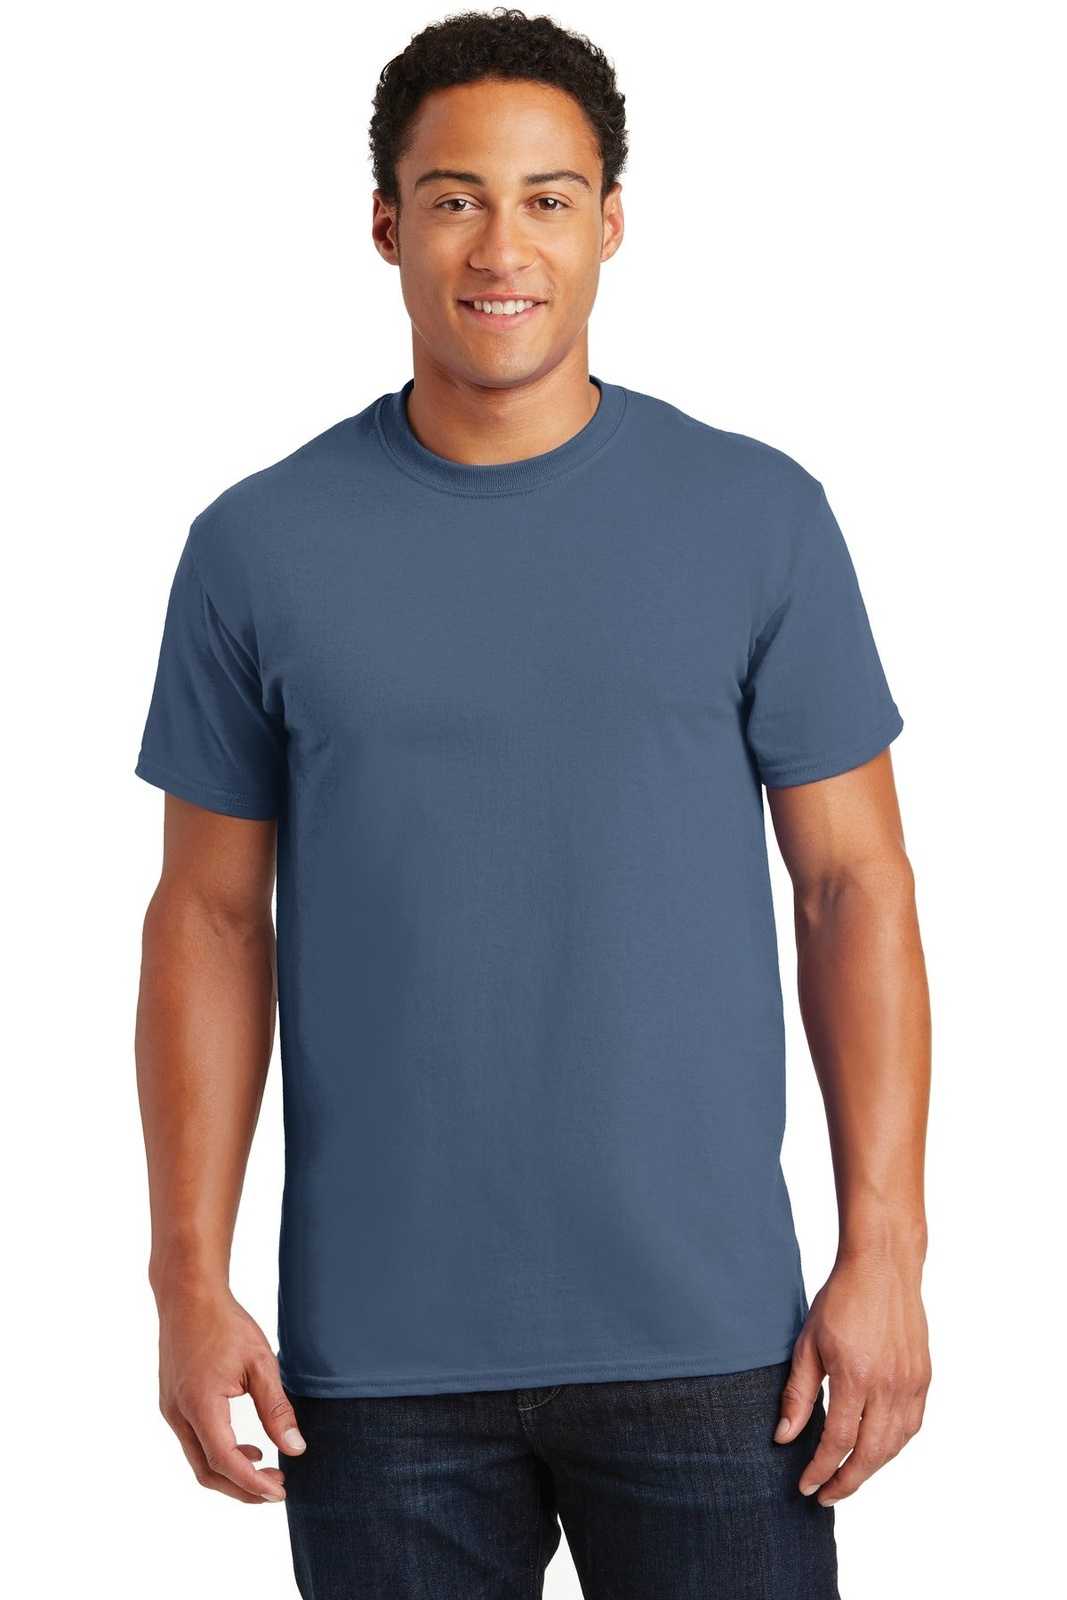 Gildan 2000 Ultra Cotton 100% Cotton T-Shirt - Indigo Blue - HIT a Double